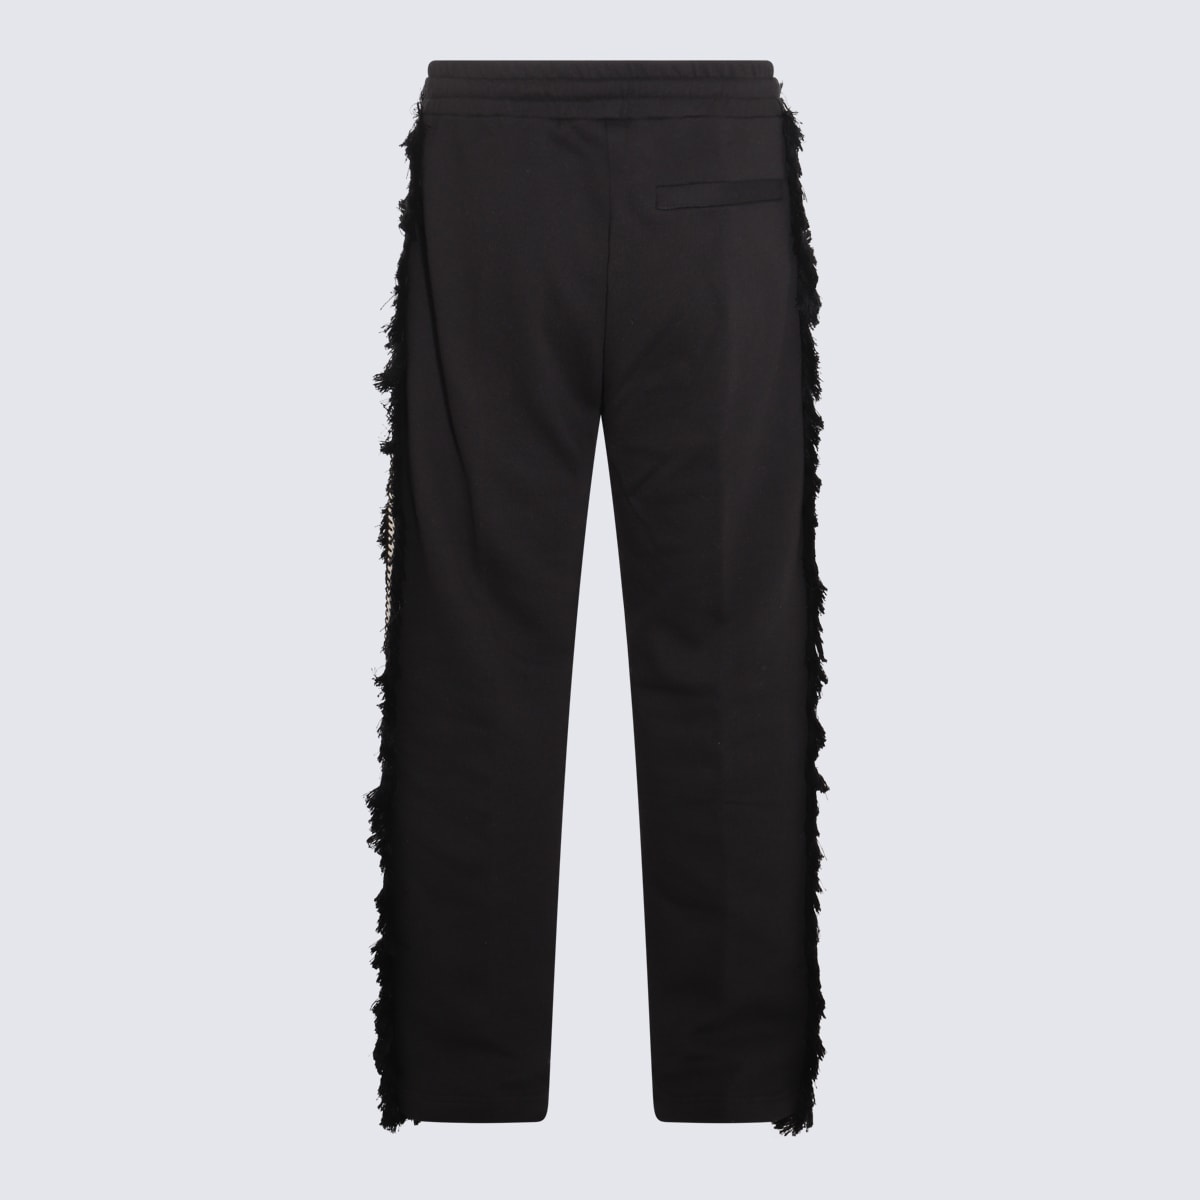 Shop Ritos Black Cotton Pants